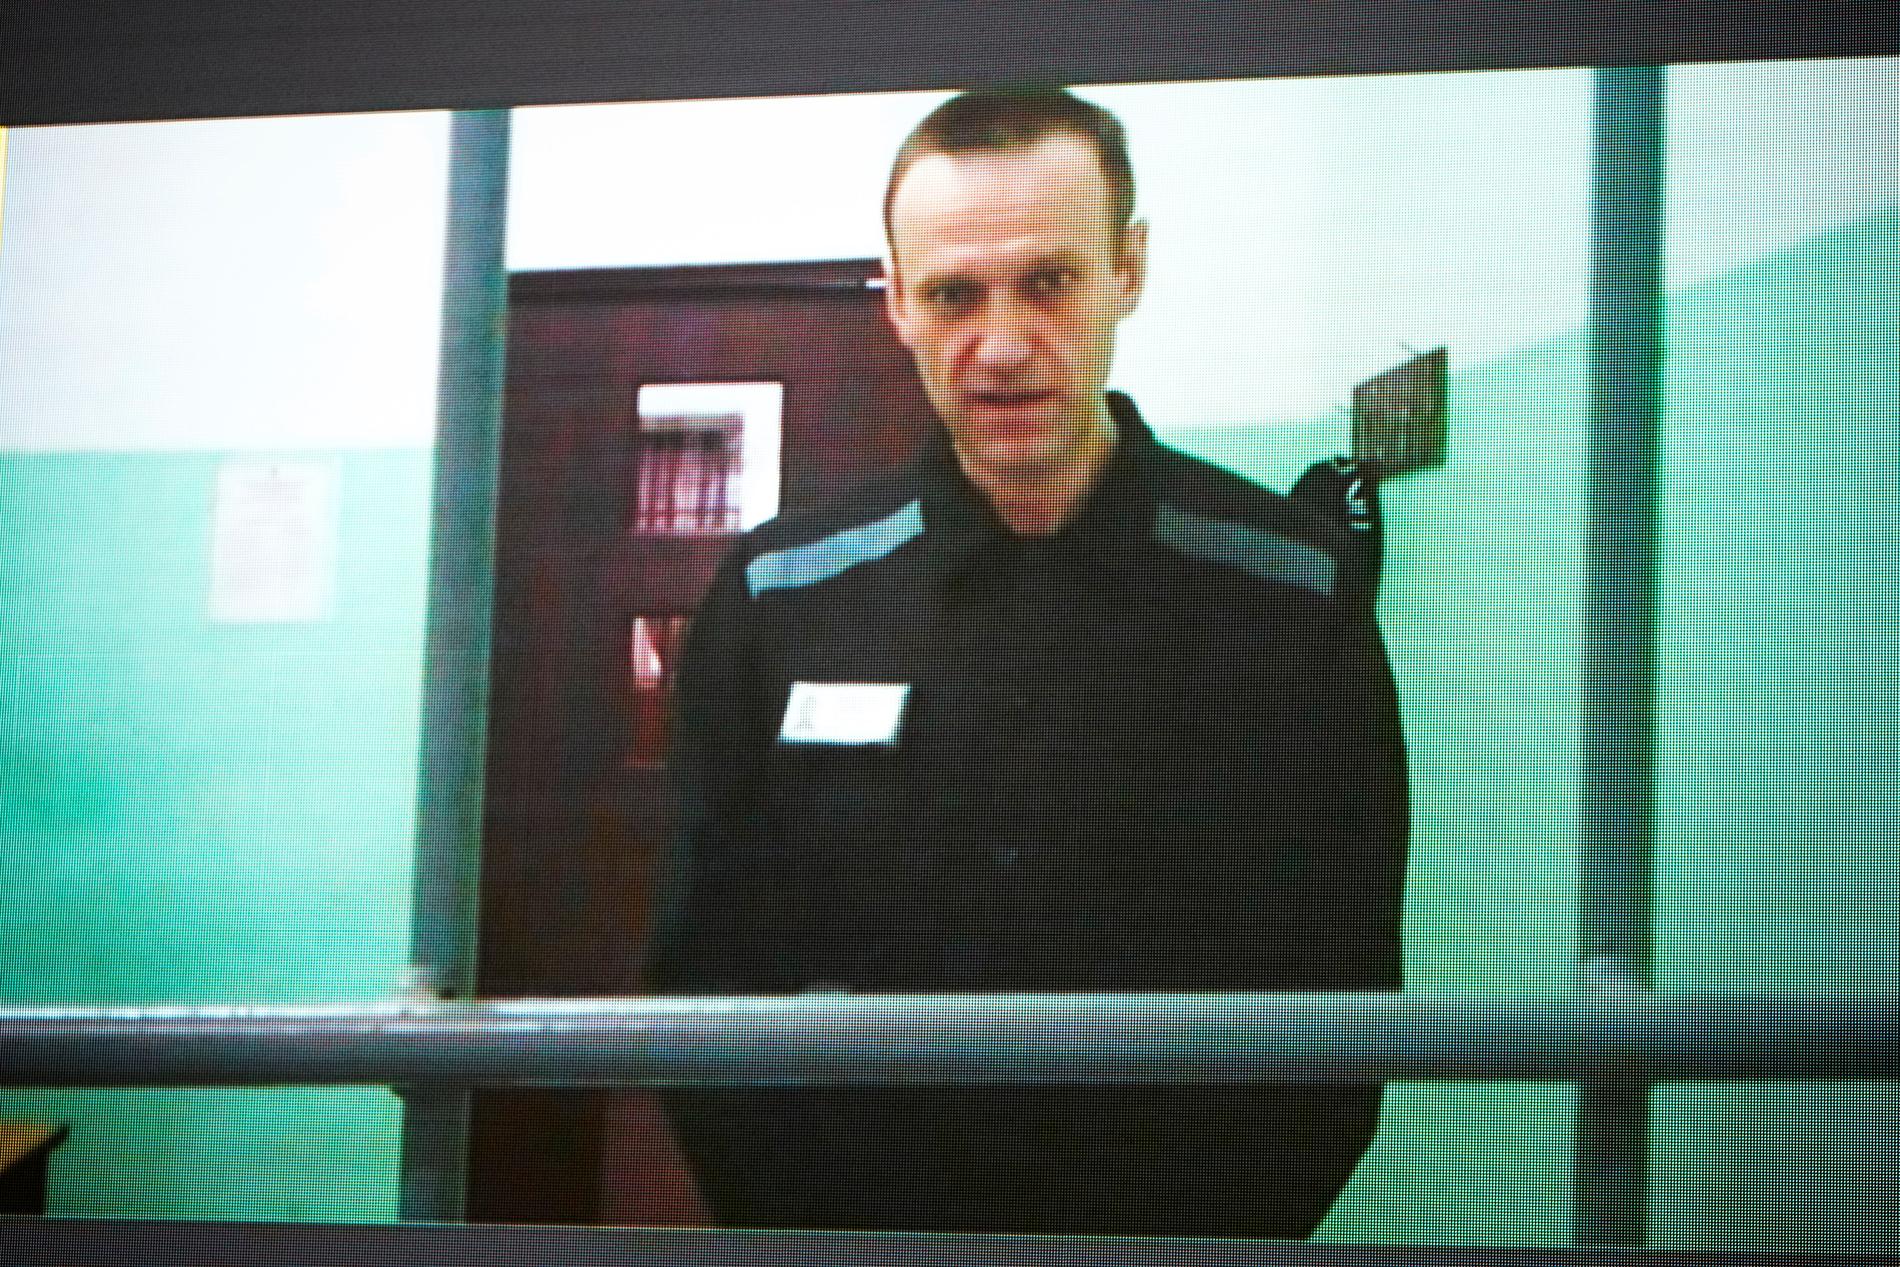 Aleksej Navalnyj i juni under ett förhör över videolänk. Arkivbild.